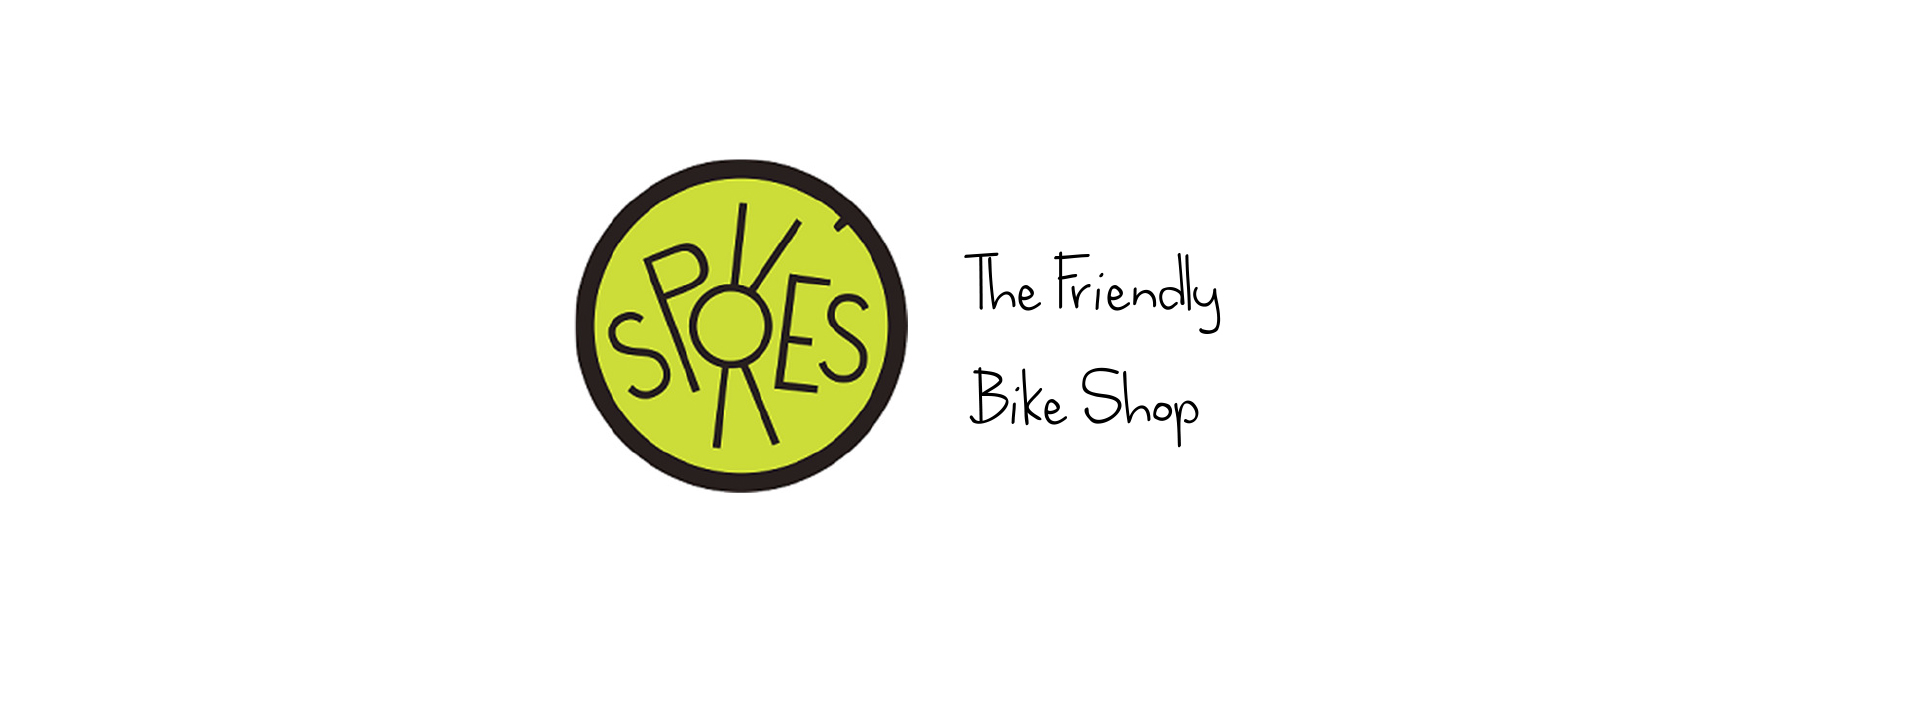 SPOKES bike shop